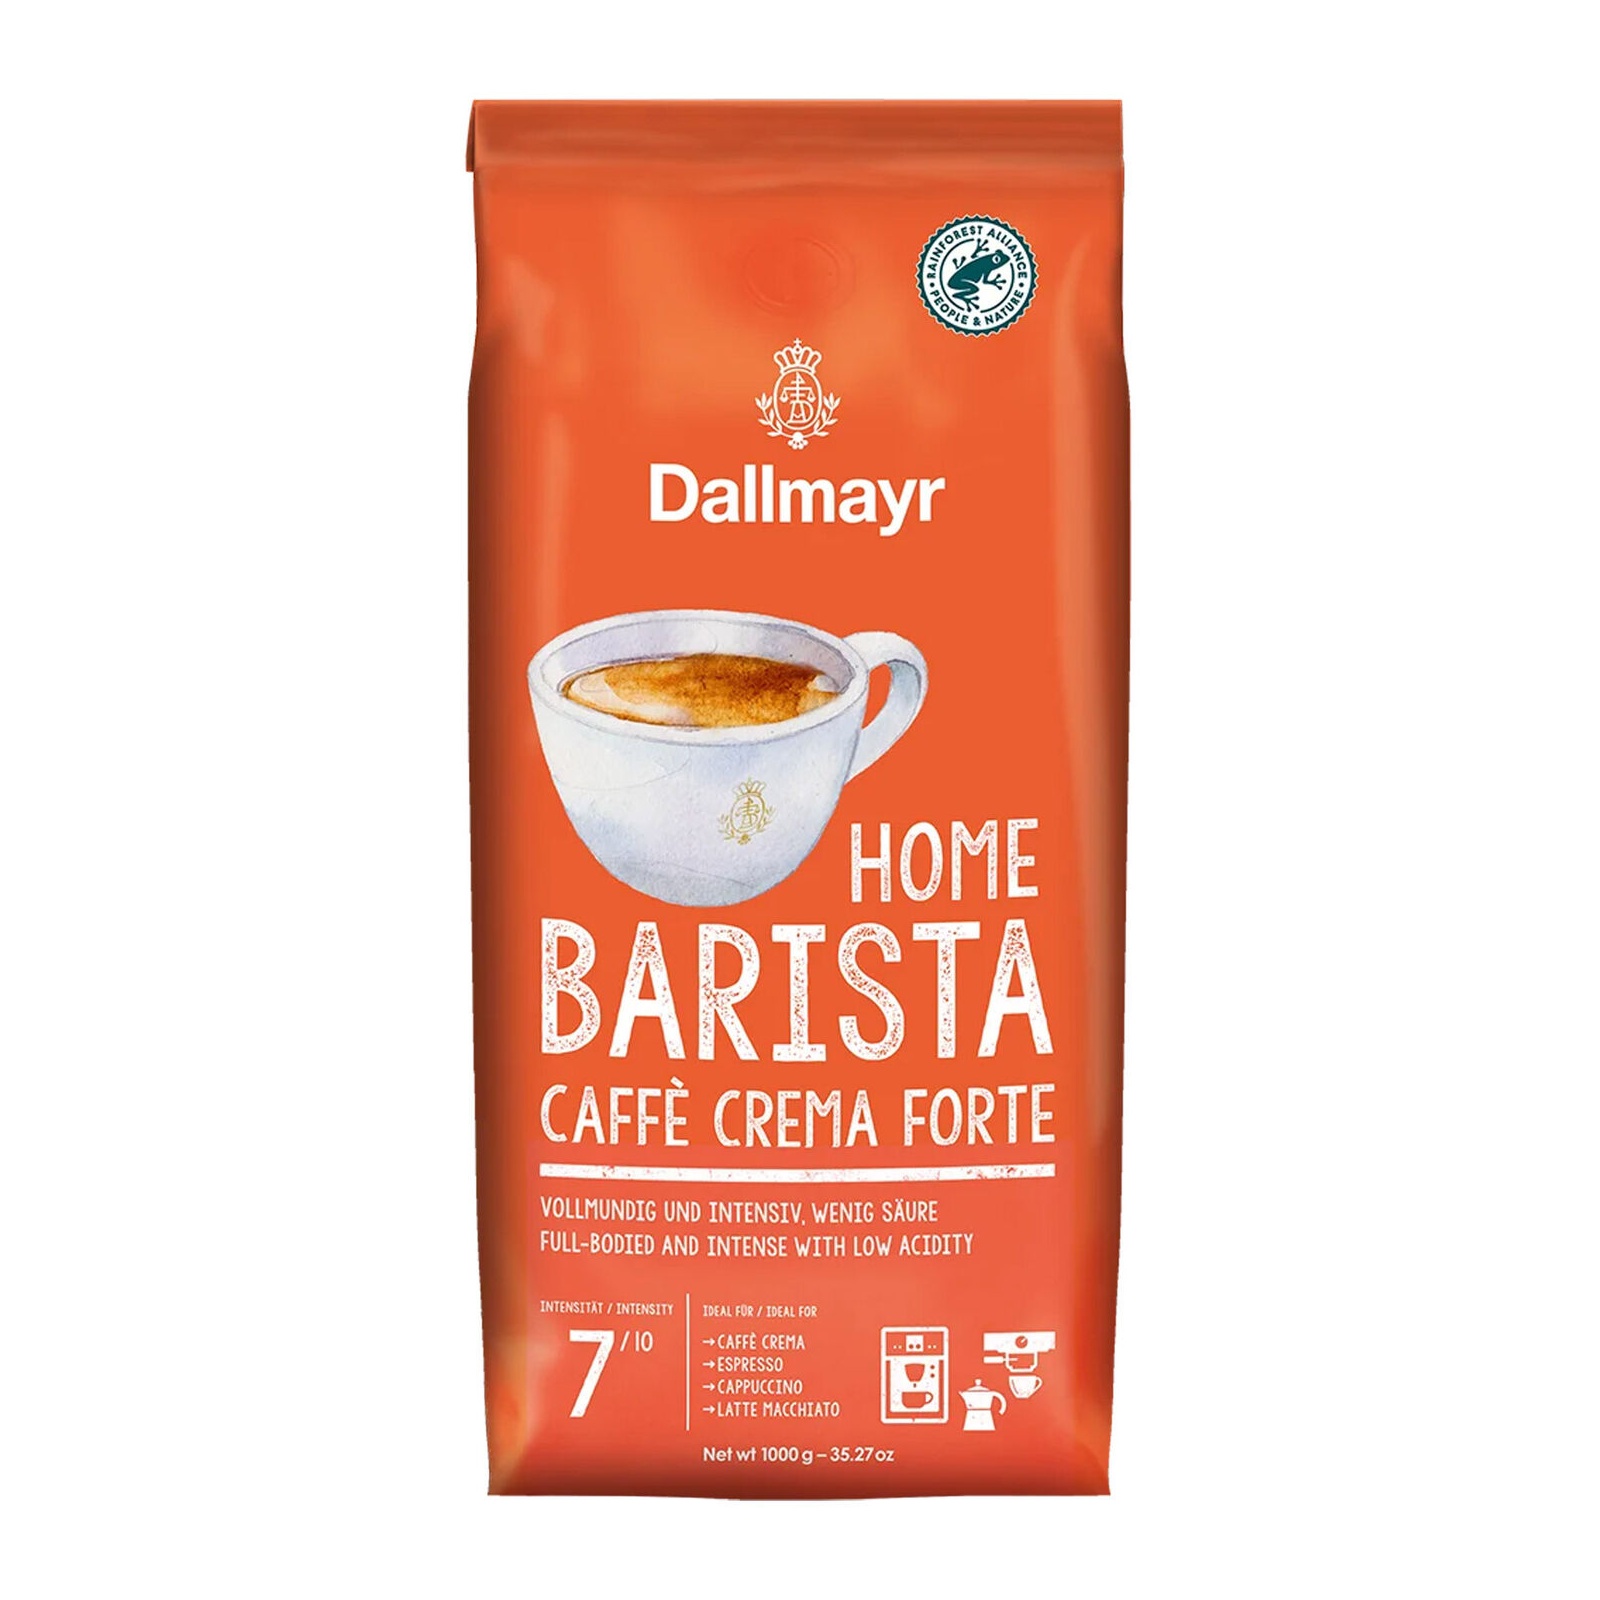 Bild von Home Barista Caffè Crema Forte Kaffeebohnen kräftig 1,0 kg